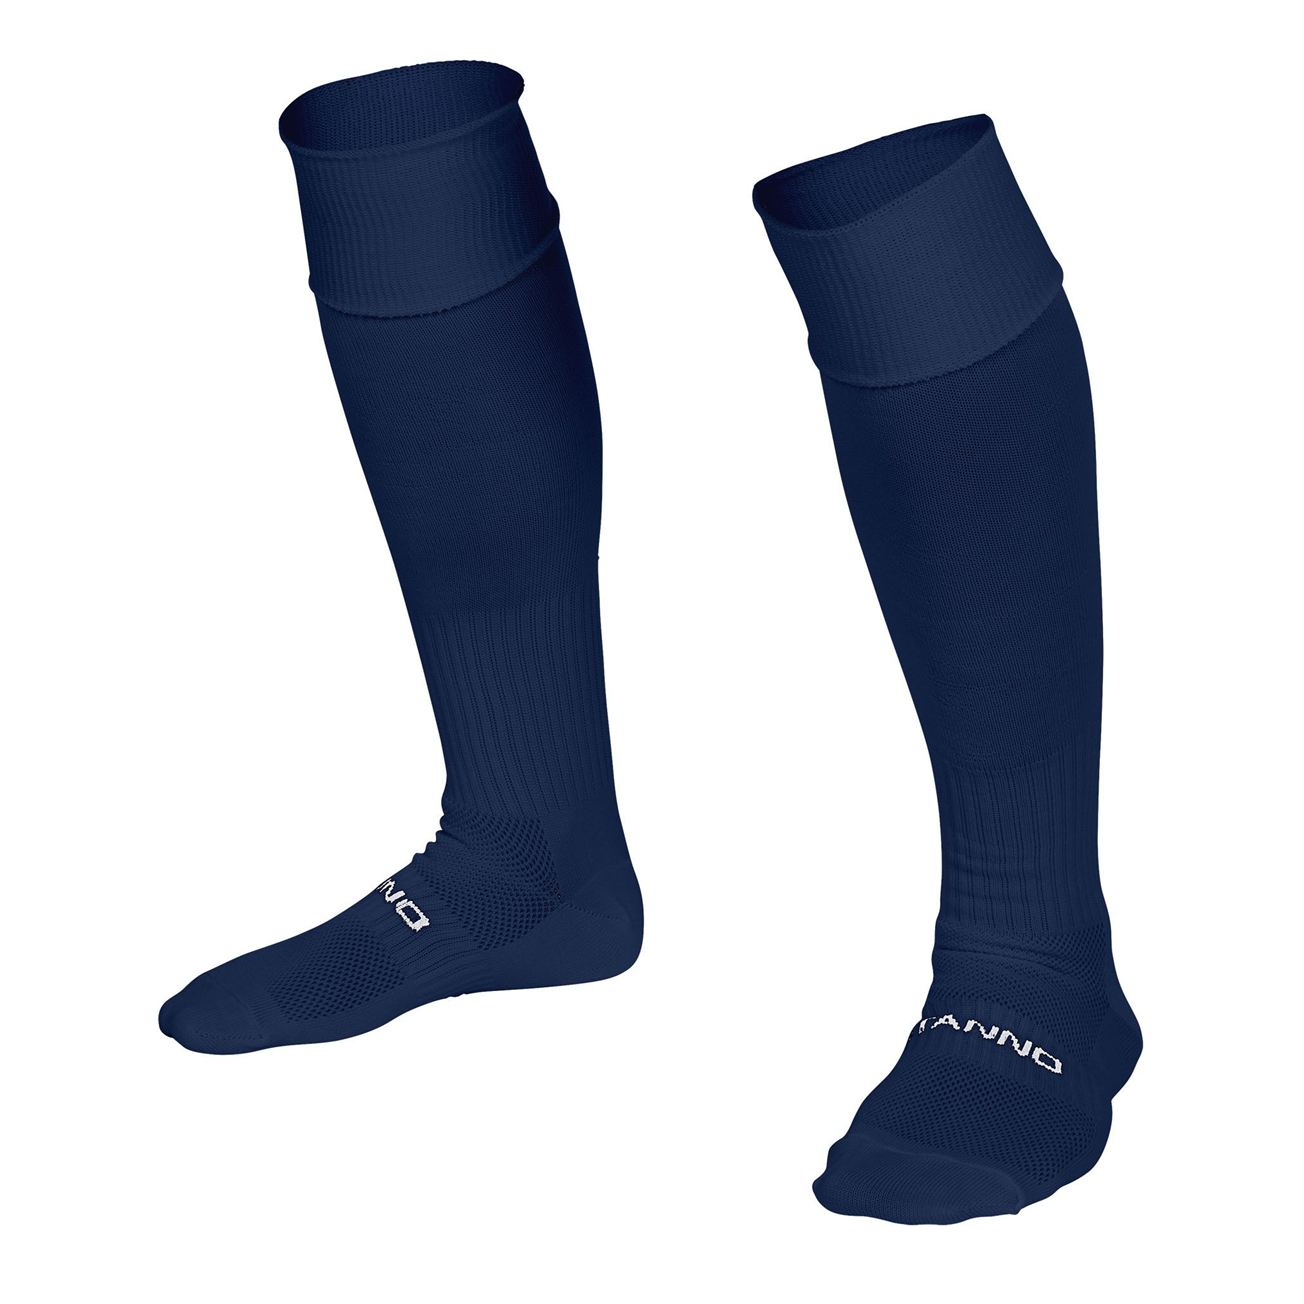 Wrens Nest FC - Training Socks